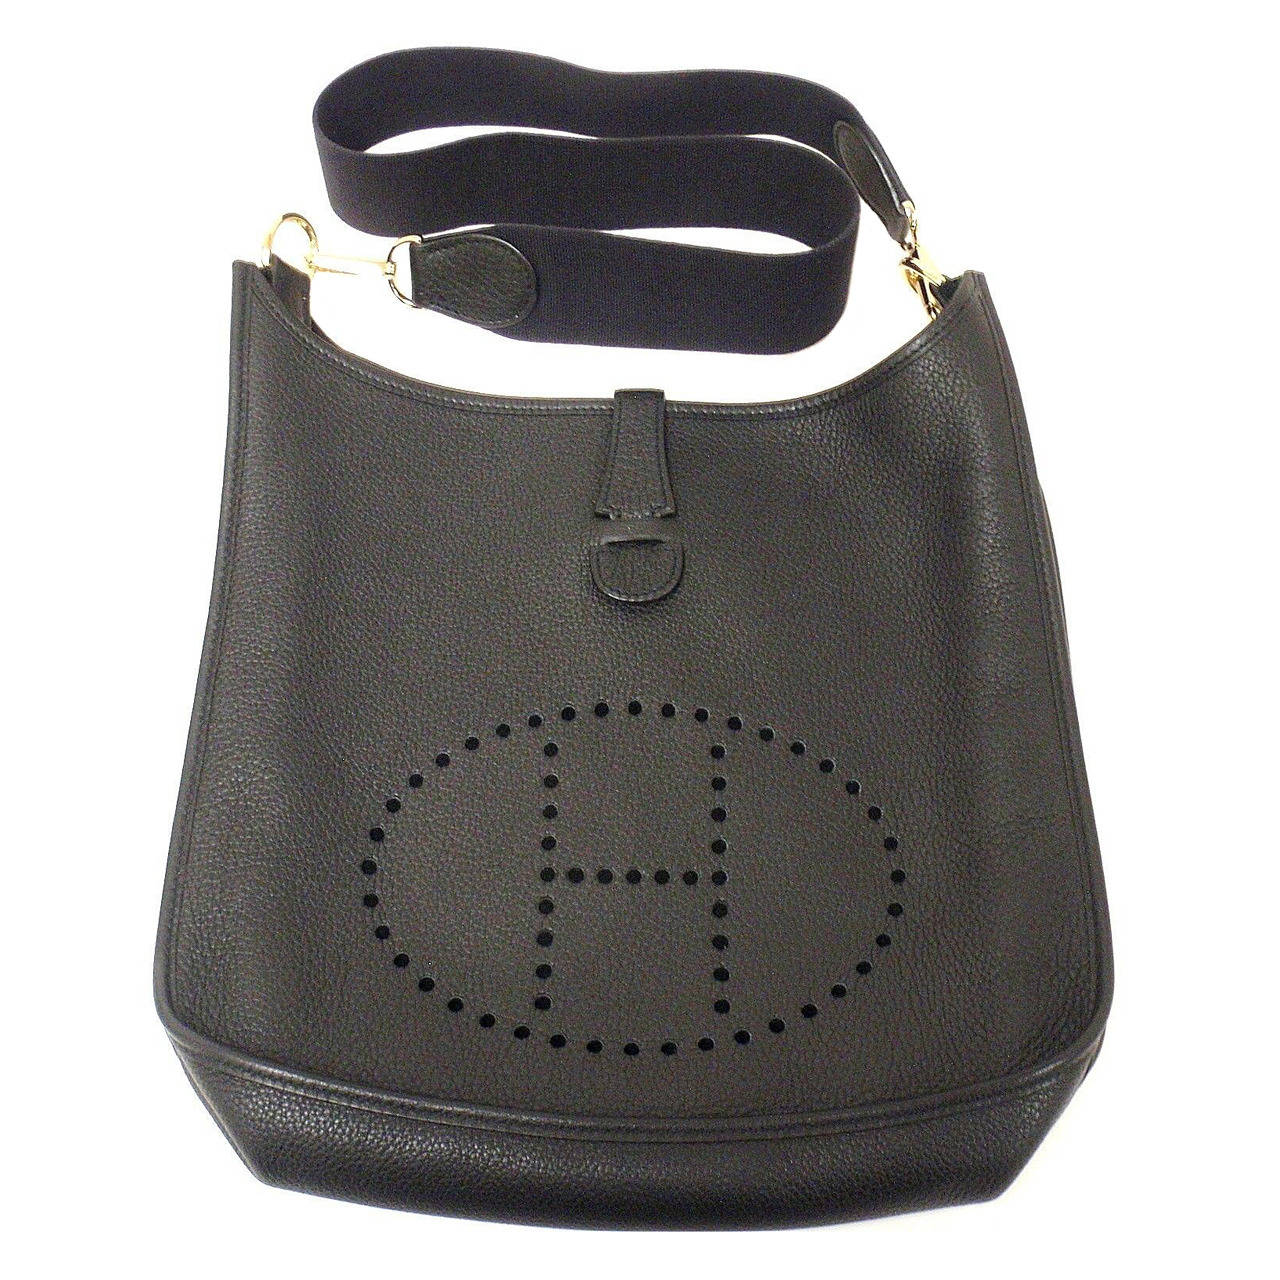 HERMES Evelyne GM Black Clemence Leather GHW Shoulder Bag, 2003 at 1stdibs